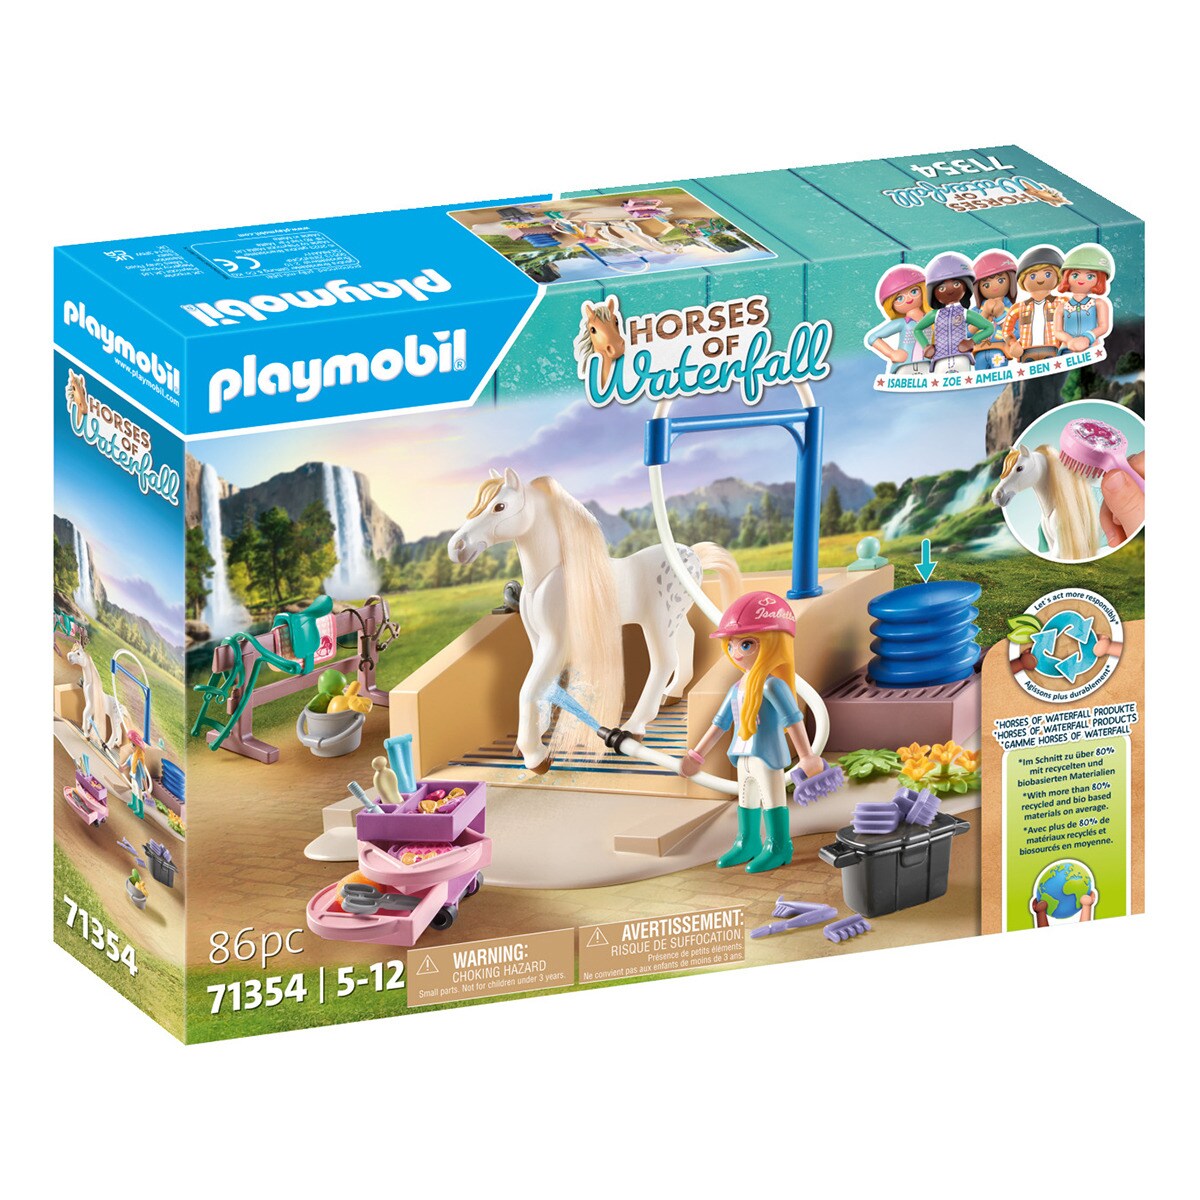 Playmobil - Set de Limpieza con Isabella y Lioness Playmobil.